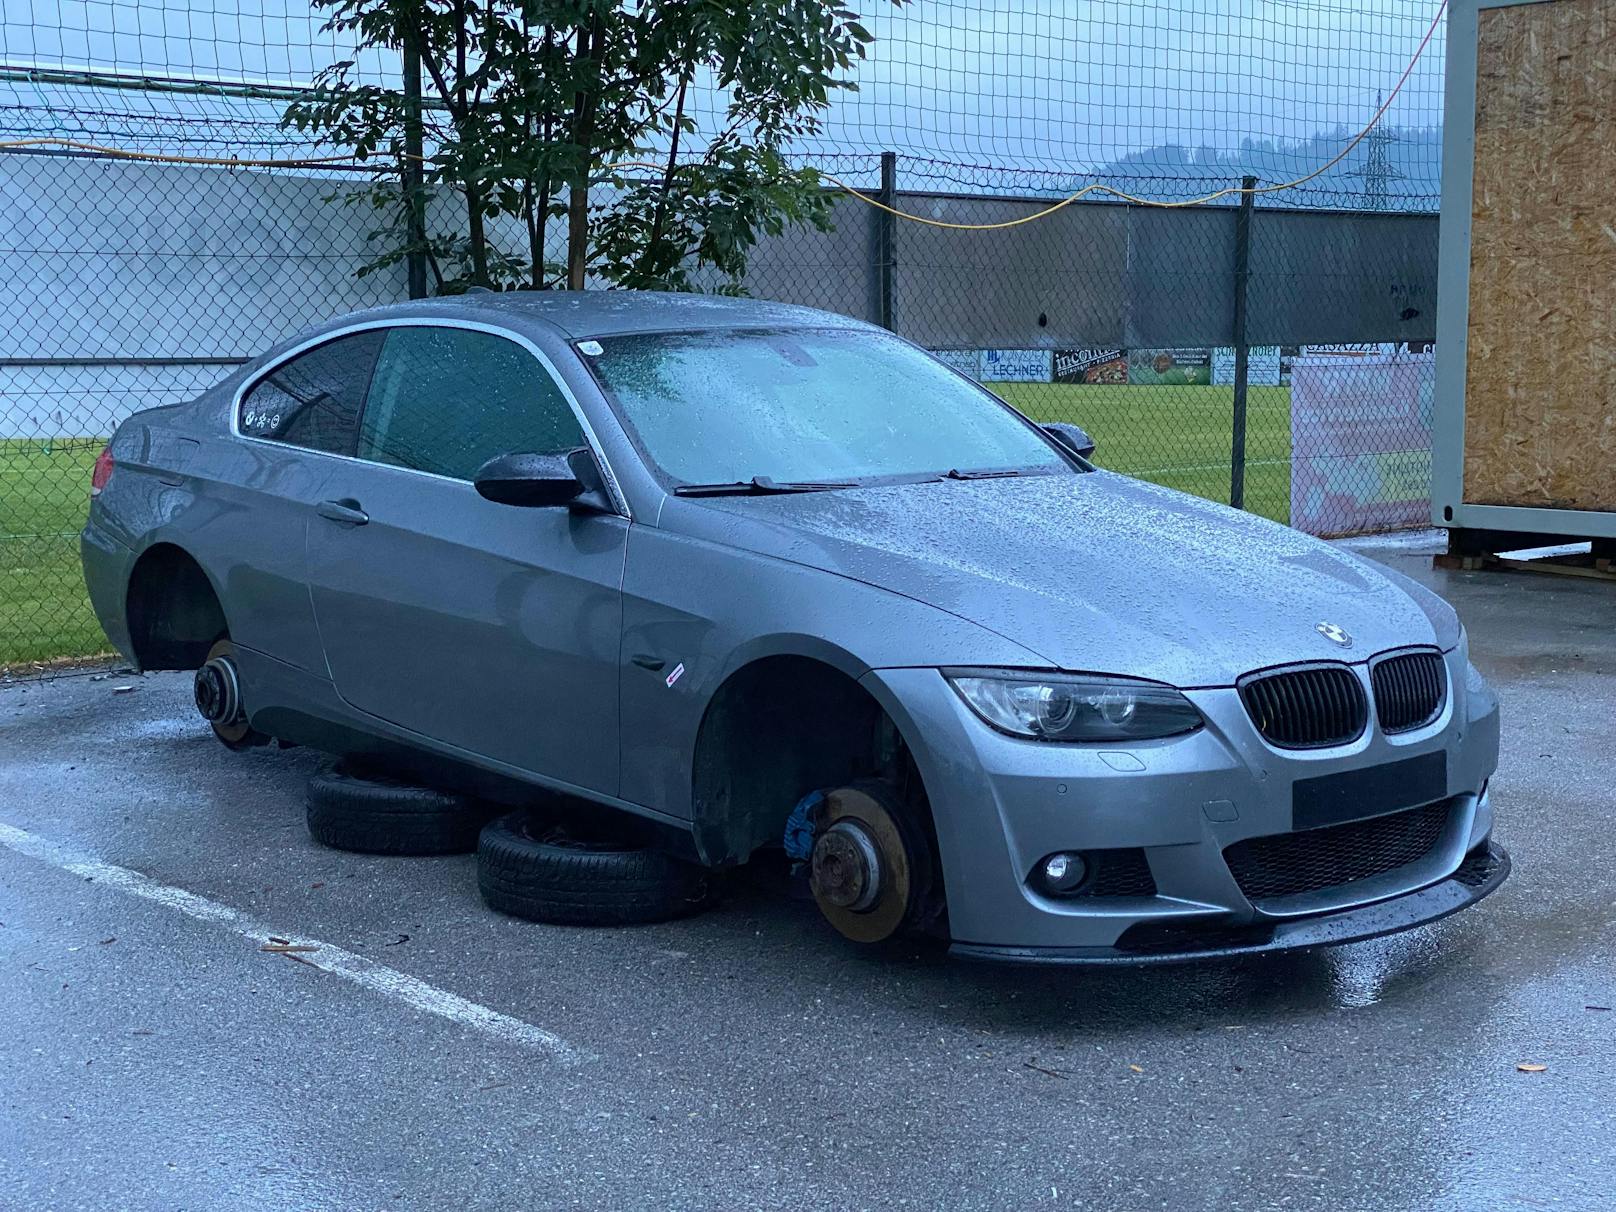 Dreiste Felgen-Diebe demontieren BMW vor Fußballplatz